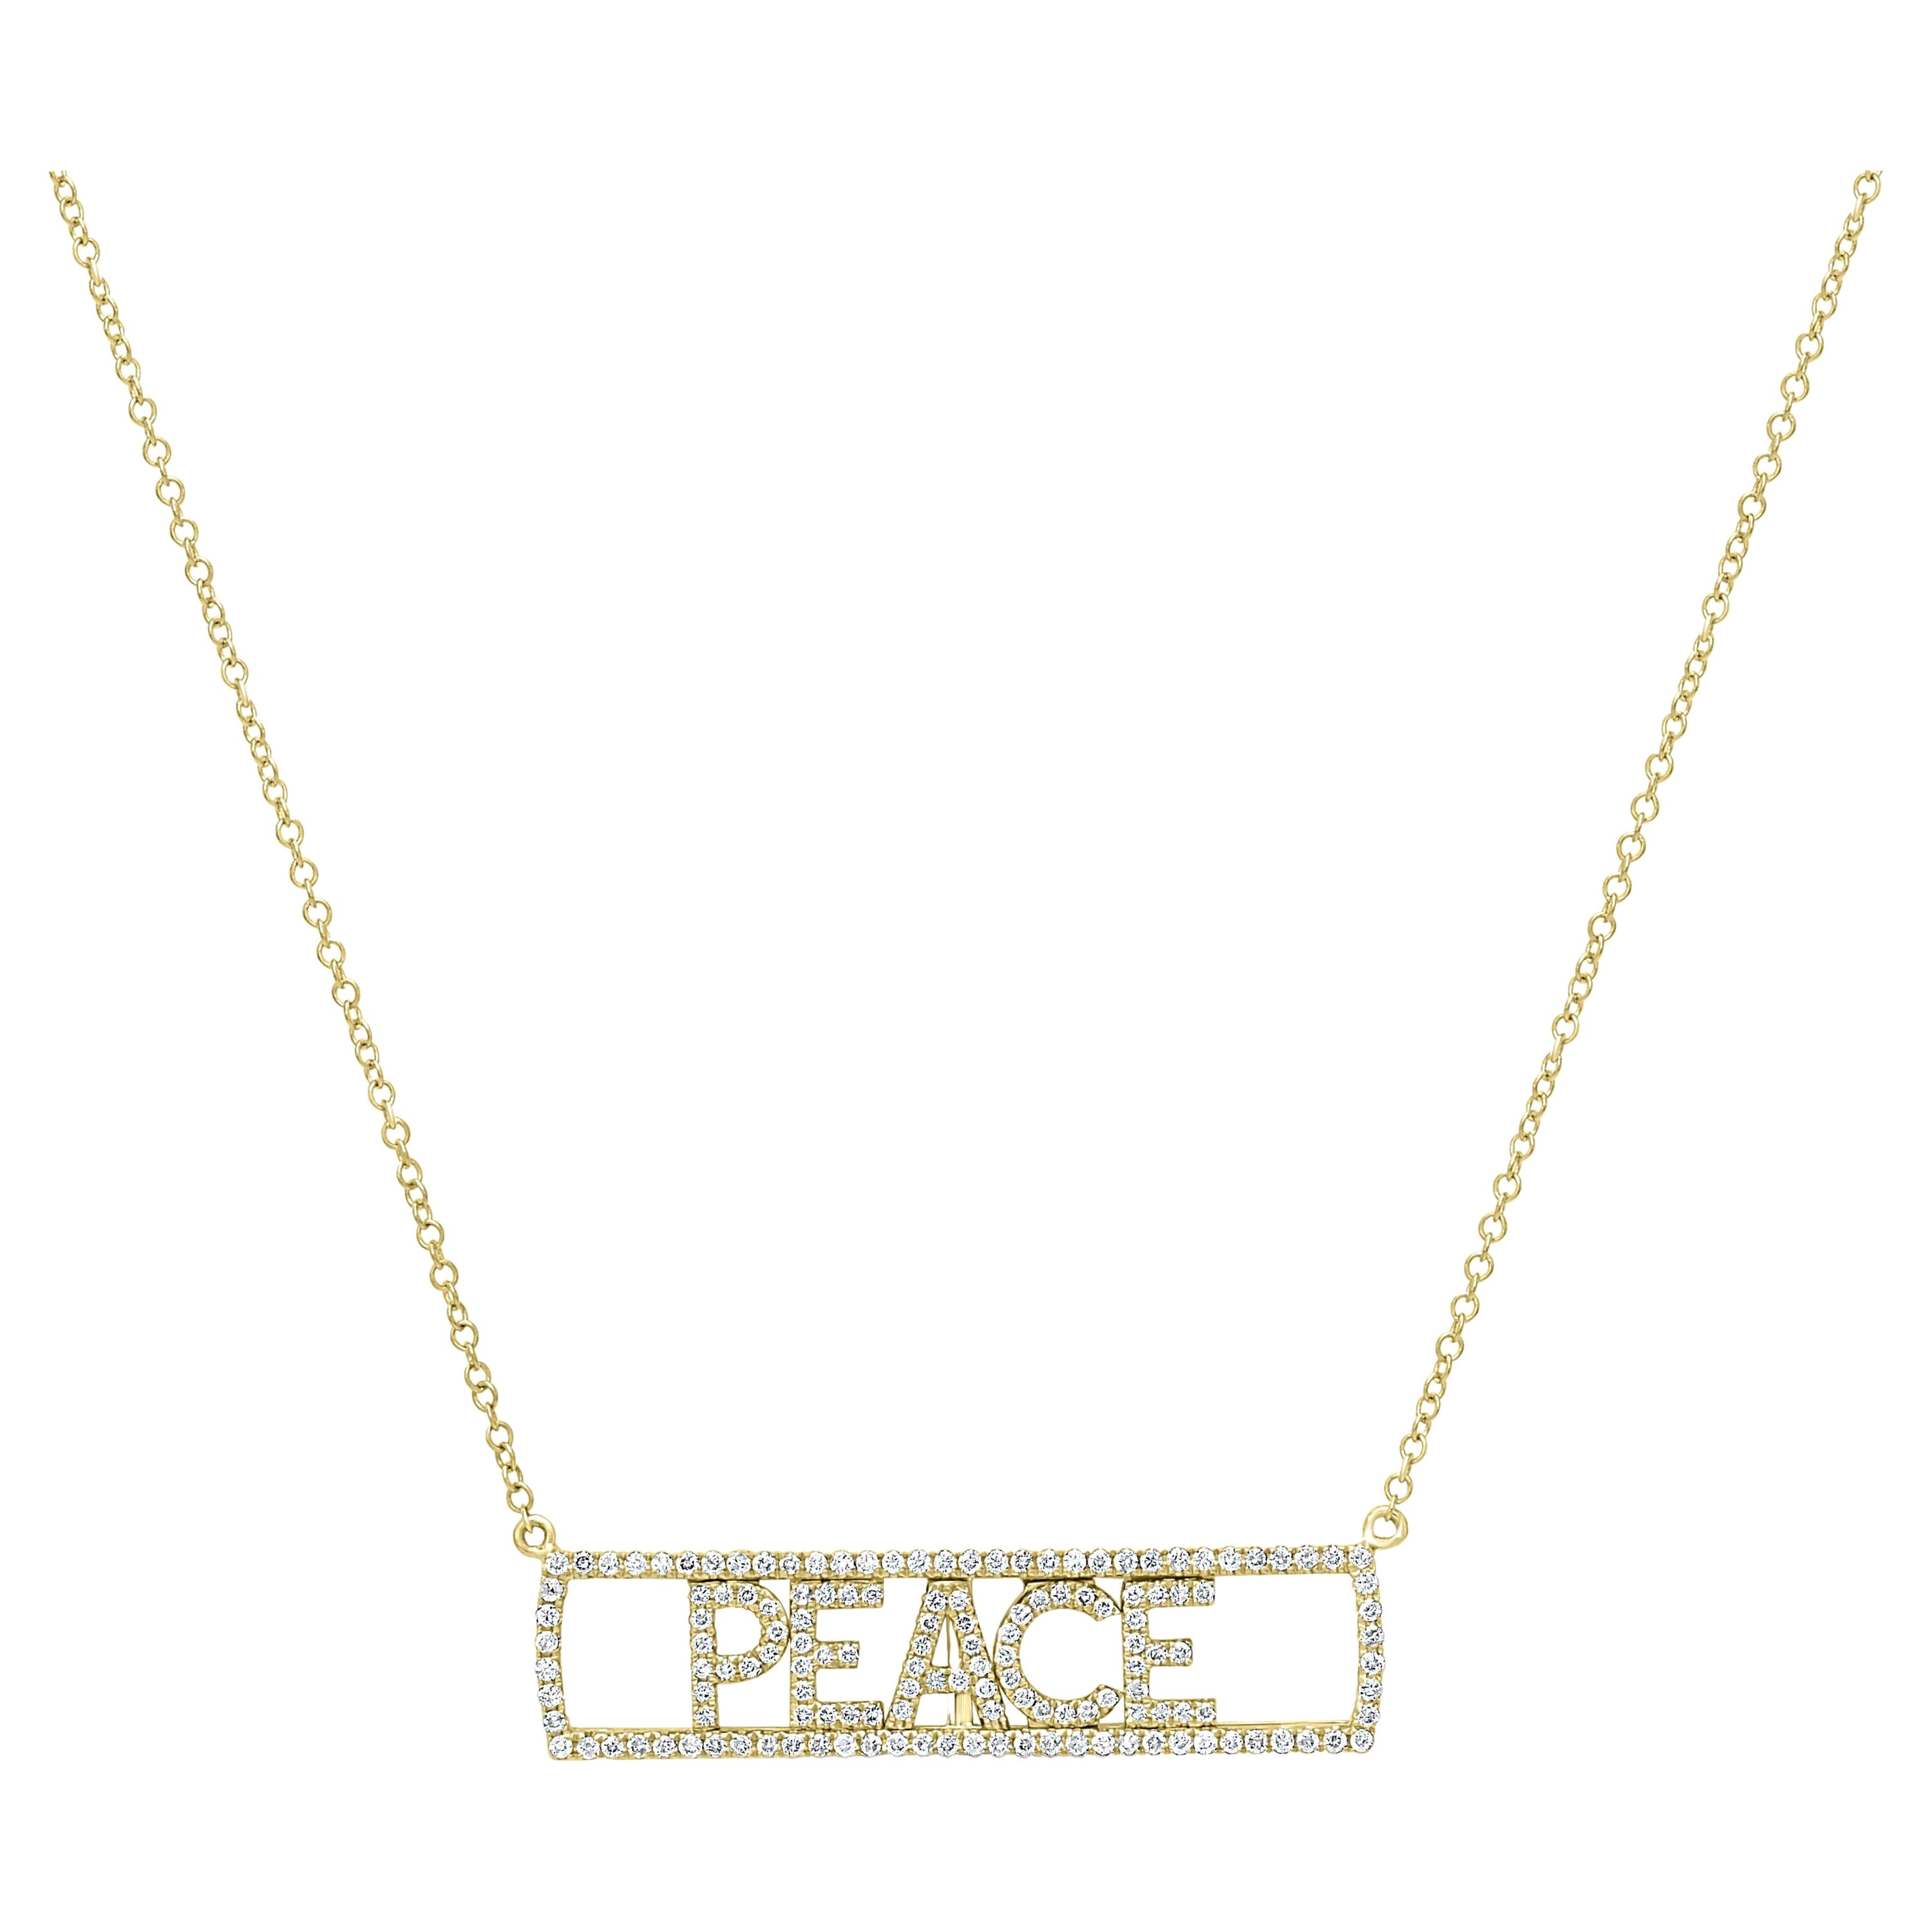 Luxle 14k Gold 3/8 Carat T.W. Diamond "Peace" Necklace